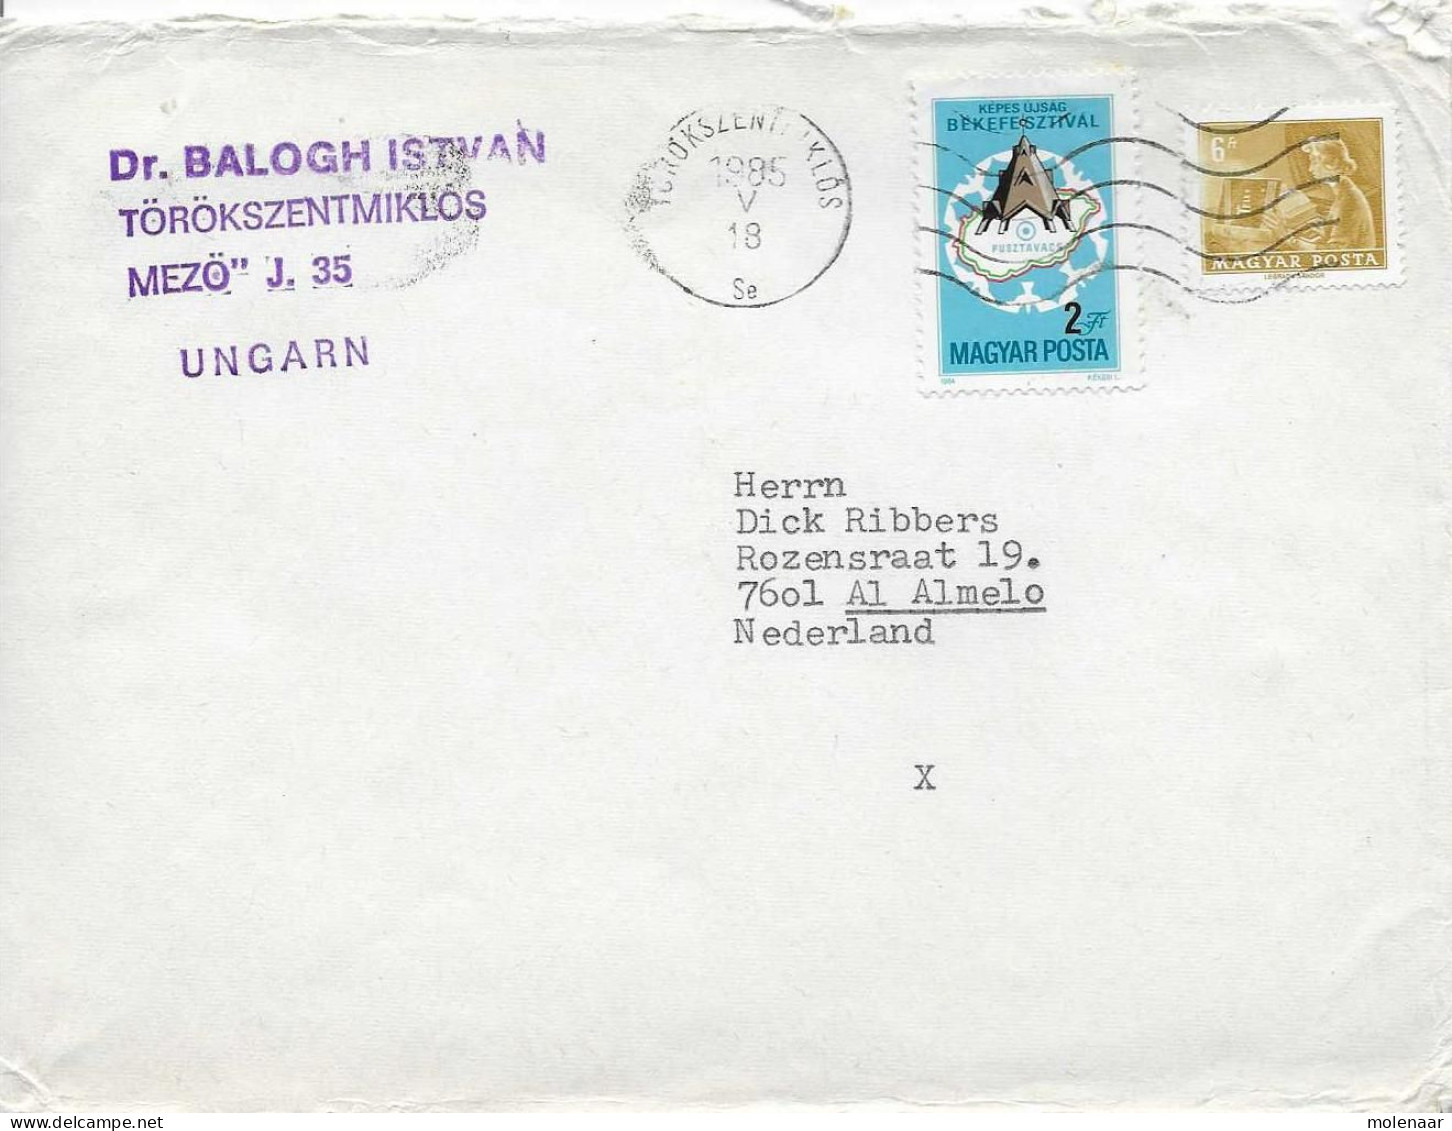 Postzegels > Europa > Hongarije > 1981-90 > Brief Met No. 3713 (17071) - Covers & Documents